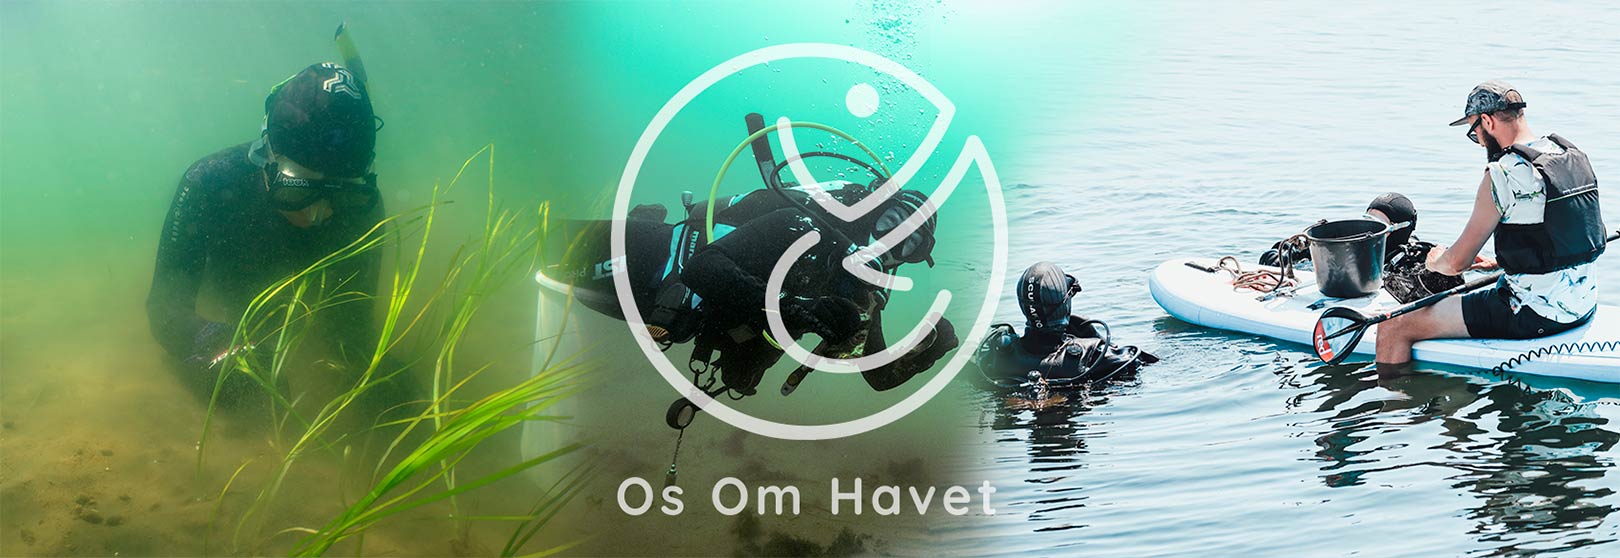 miljøorganisationen ”Os Om Havet” ålegræs Øresundsakvariet